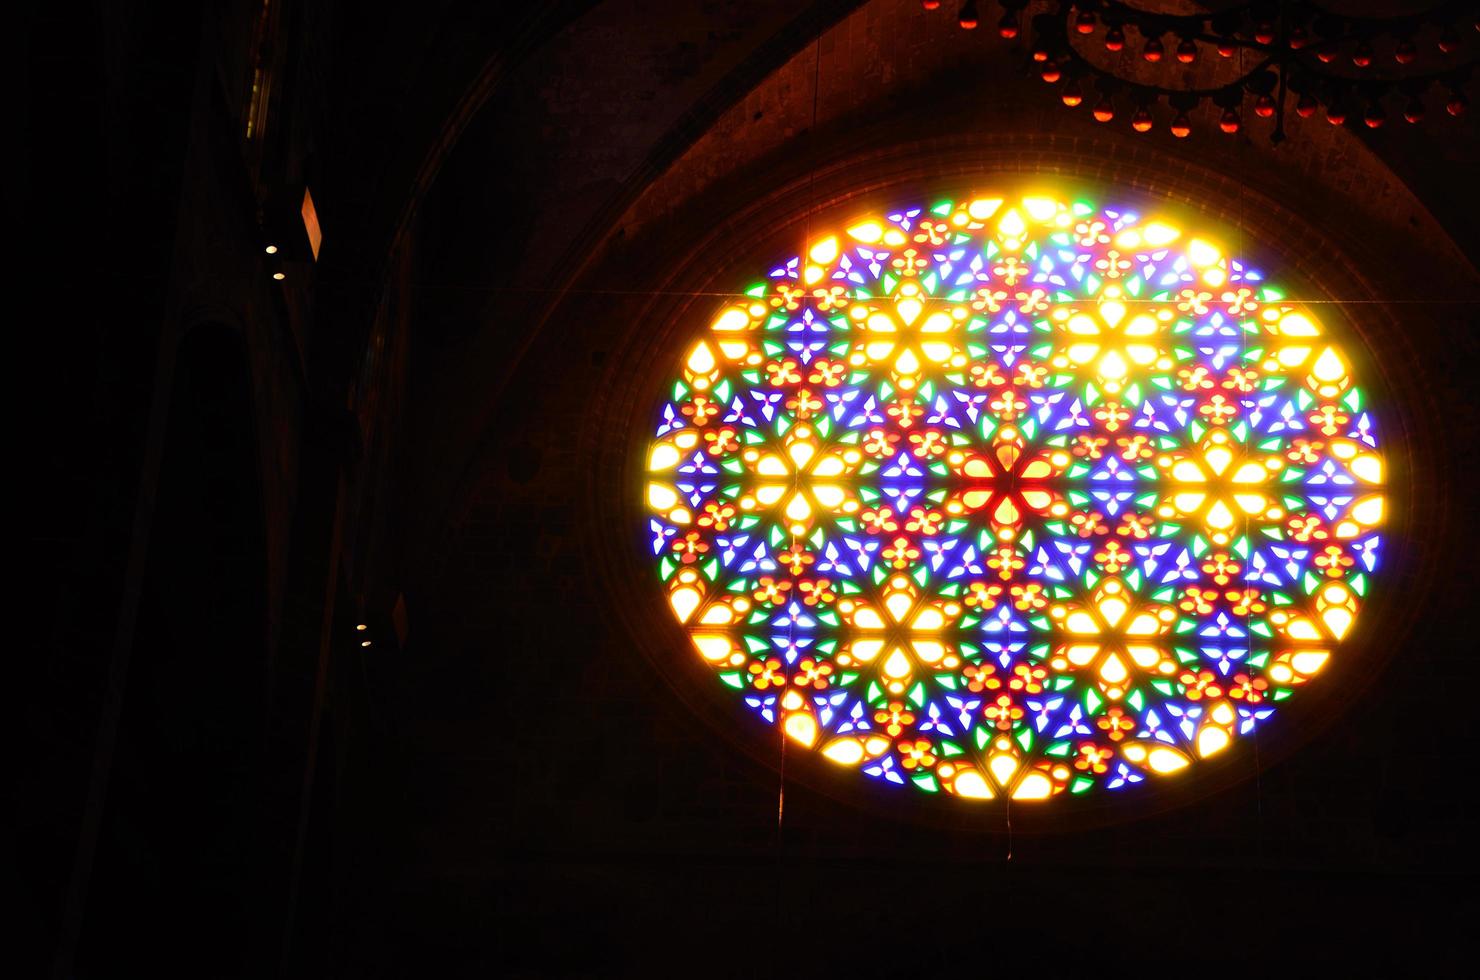 fenêtres colorées dans la cathédrale photo